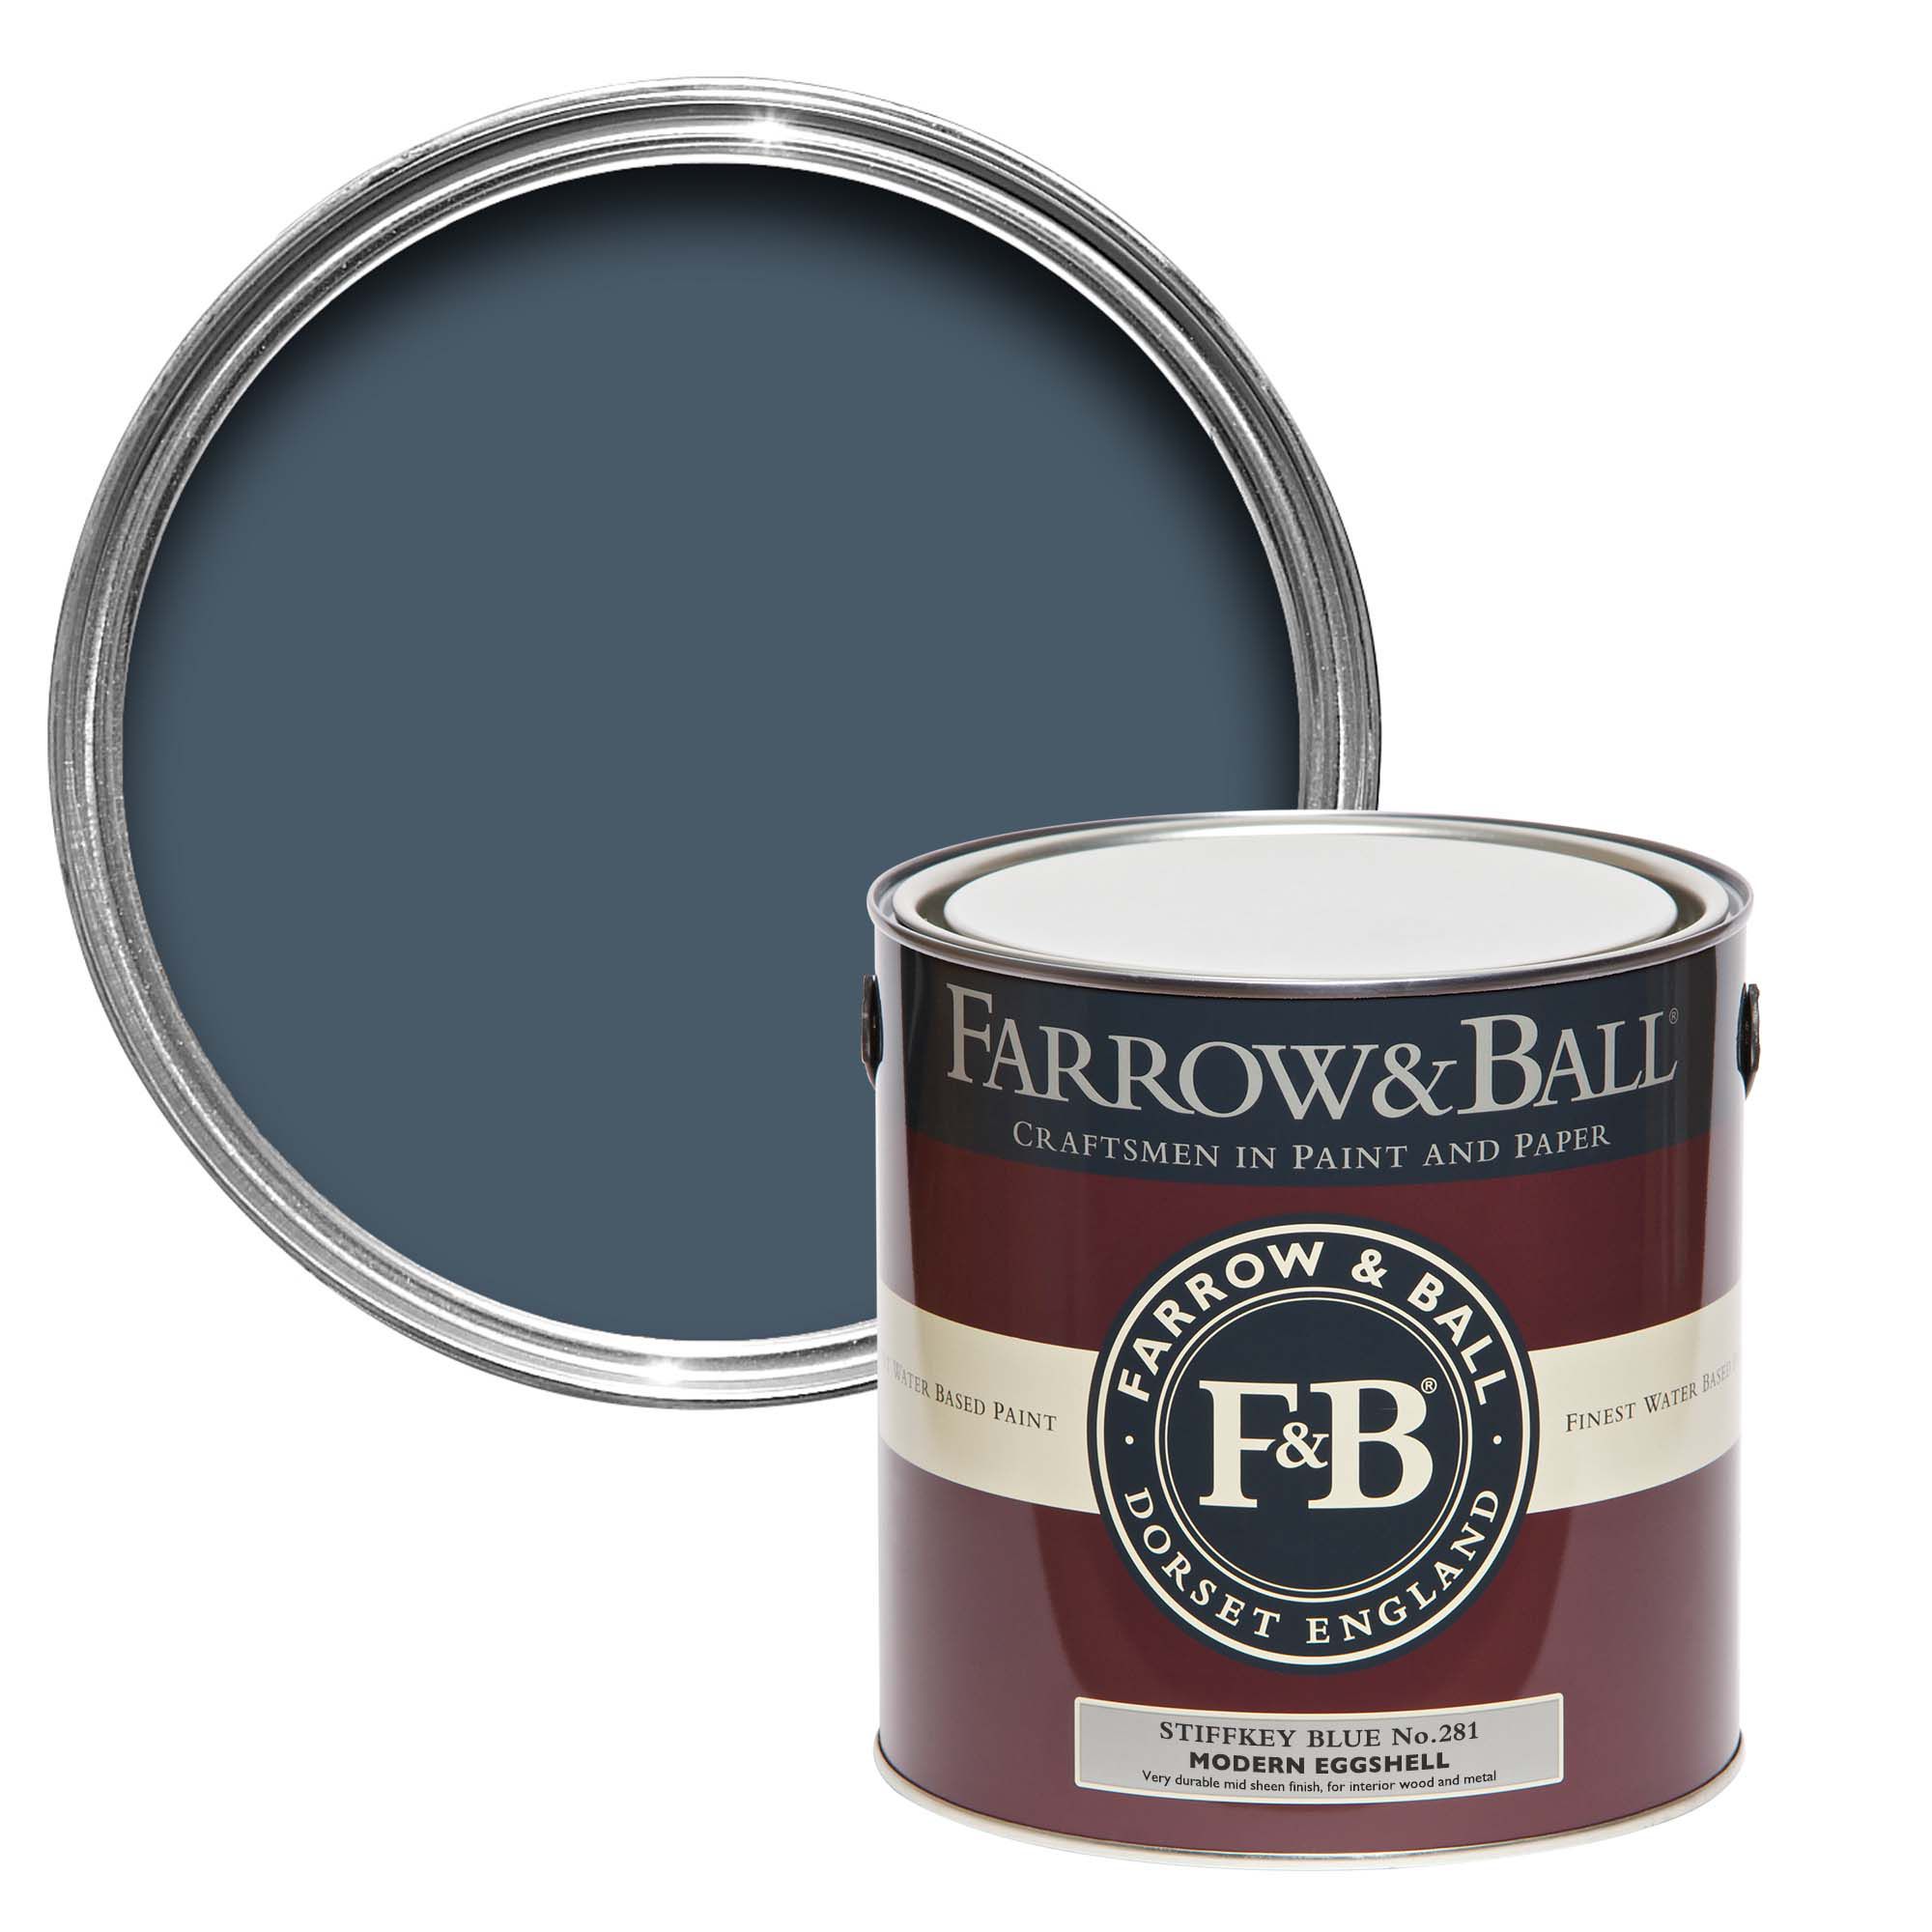 Farrow & Ball Modern Stiffkey Blue No.281 Eggshell Paint, 2.5L